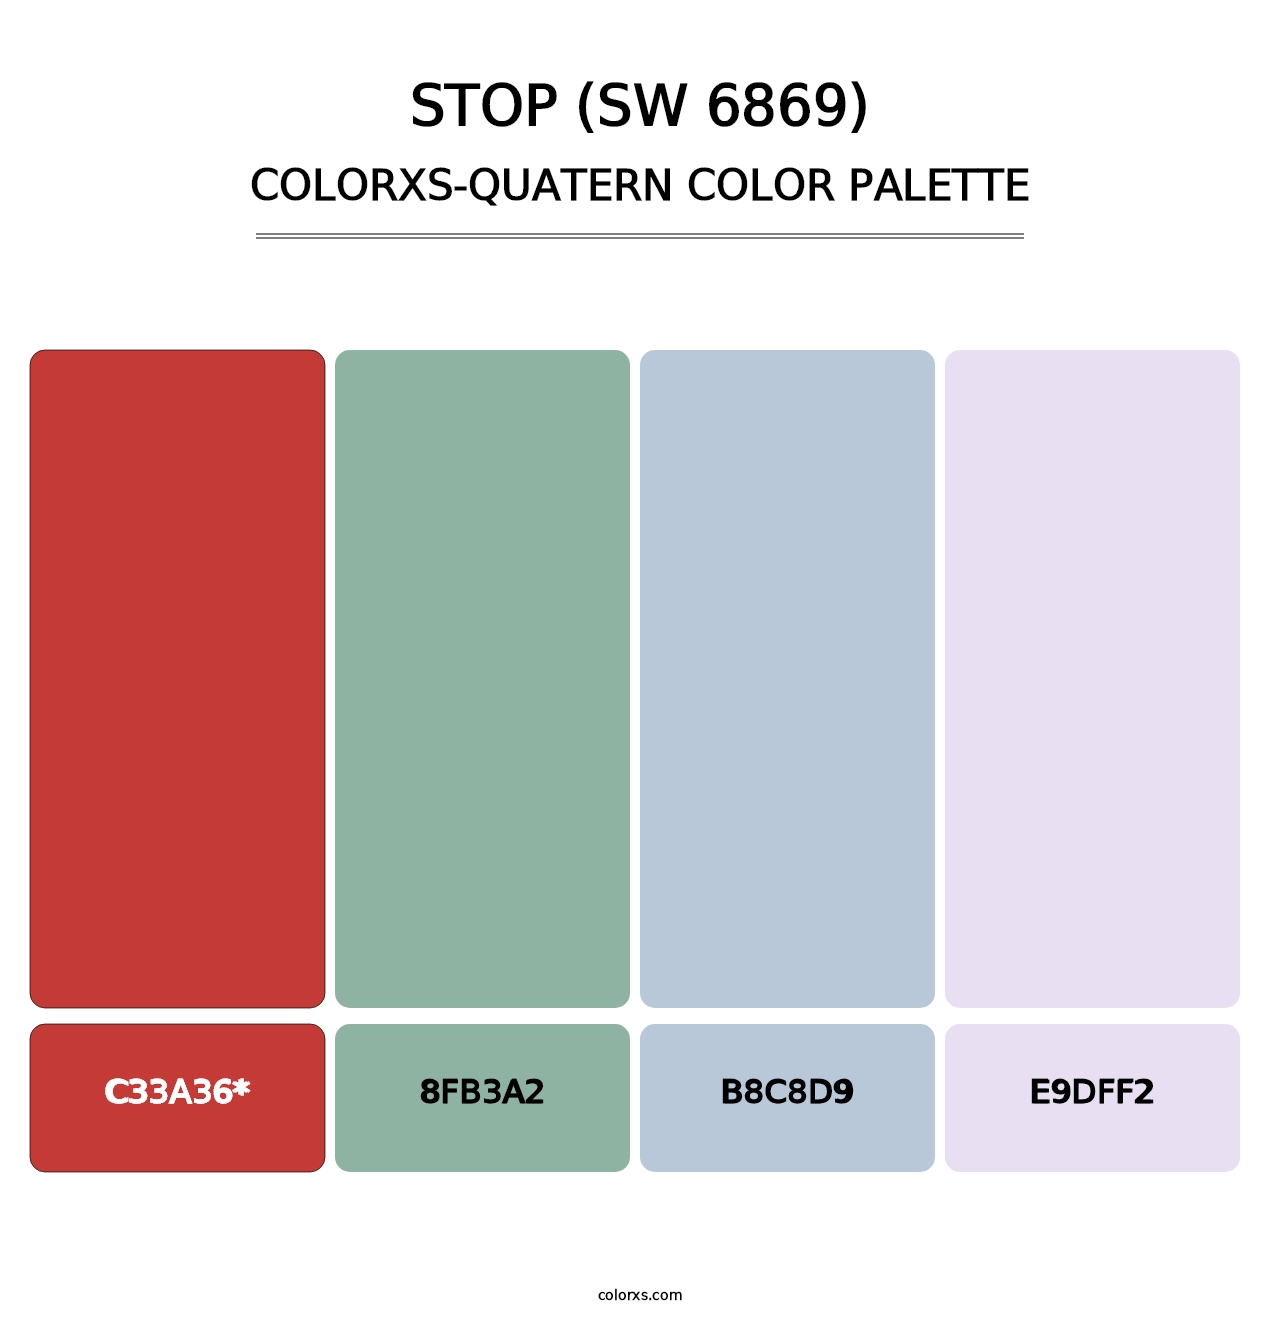 Stop (SW 6869) - Colorxs Quatern Palette